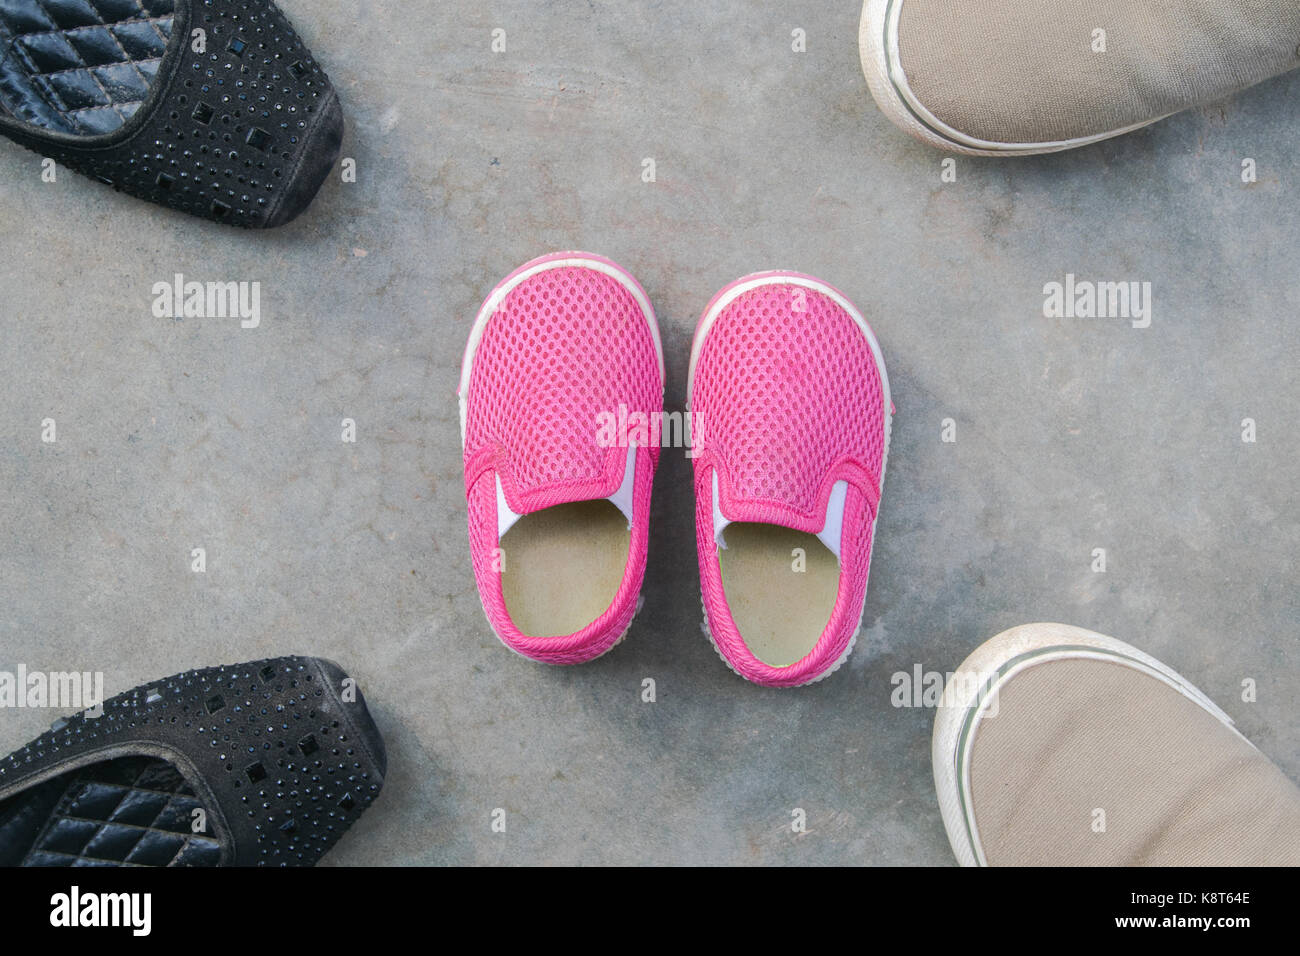 Padre madre hijo e hija zapatos en el piso, concepto de Fotografía de stock Alamy